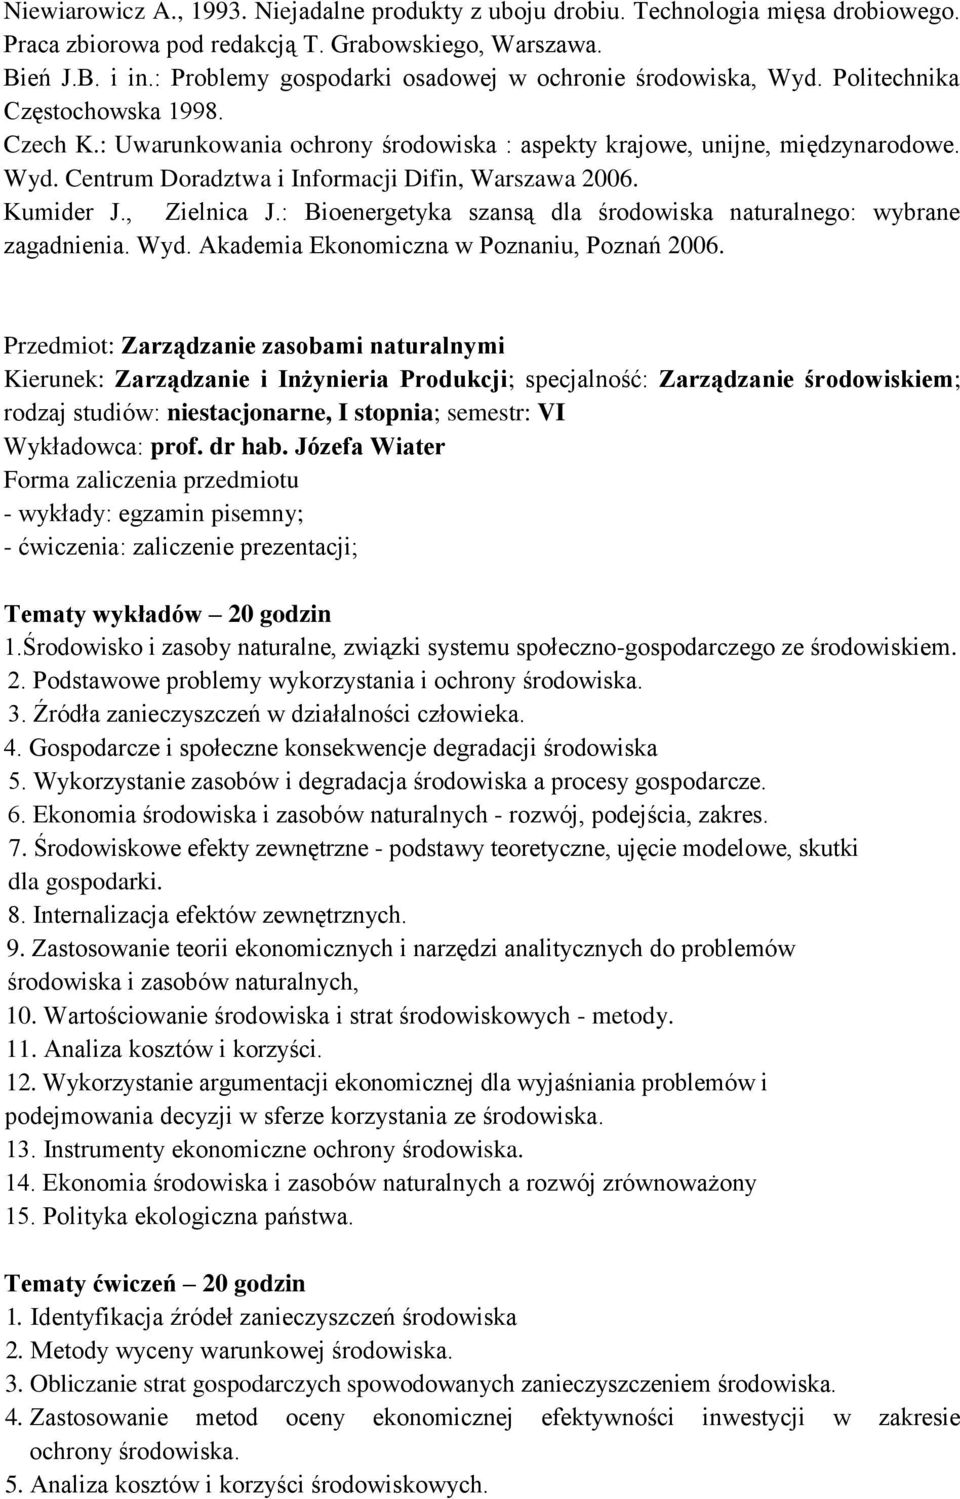 Kumider J., Zielnica J.: Bioenergetyka szansą dla środowiska naturalnego: wybrane zagadnienia. Wyd. Akademia Ekonomiczna w Poznaniu, Poznań 2006.